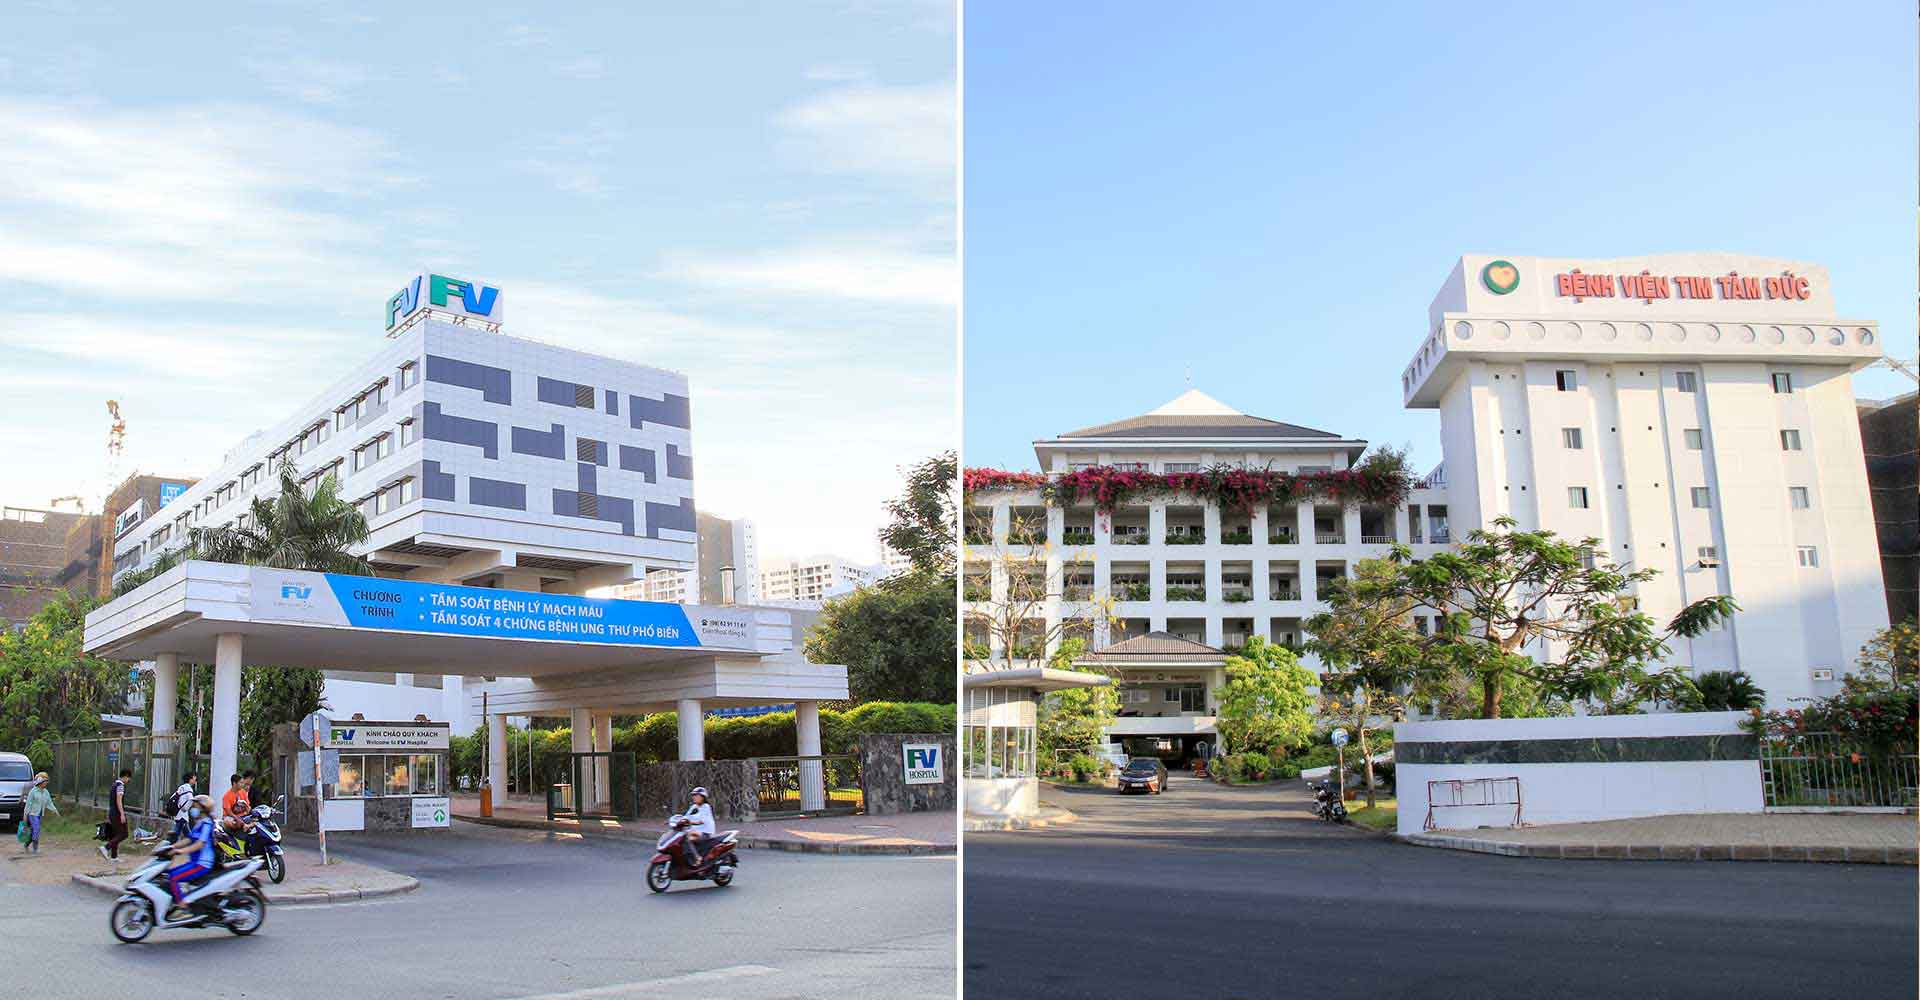 Tiện ích 2 : Ngoại khu bệnh viện Pháp Việt